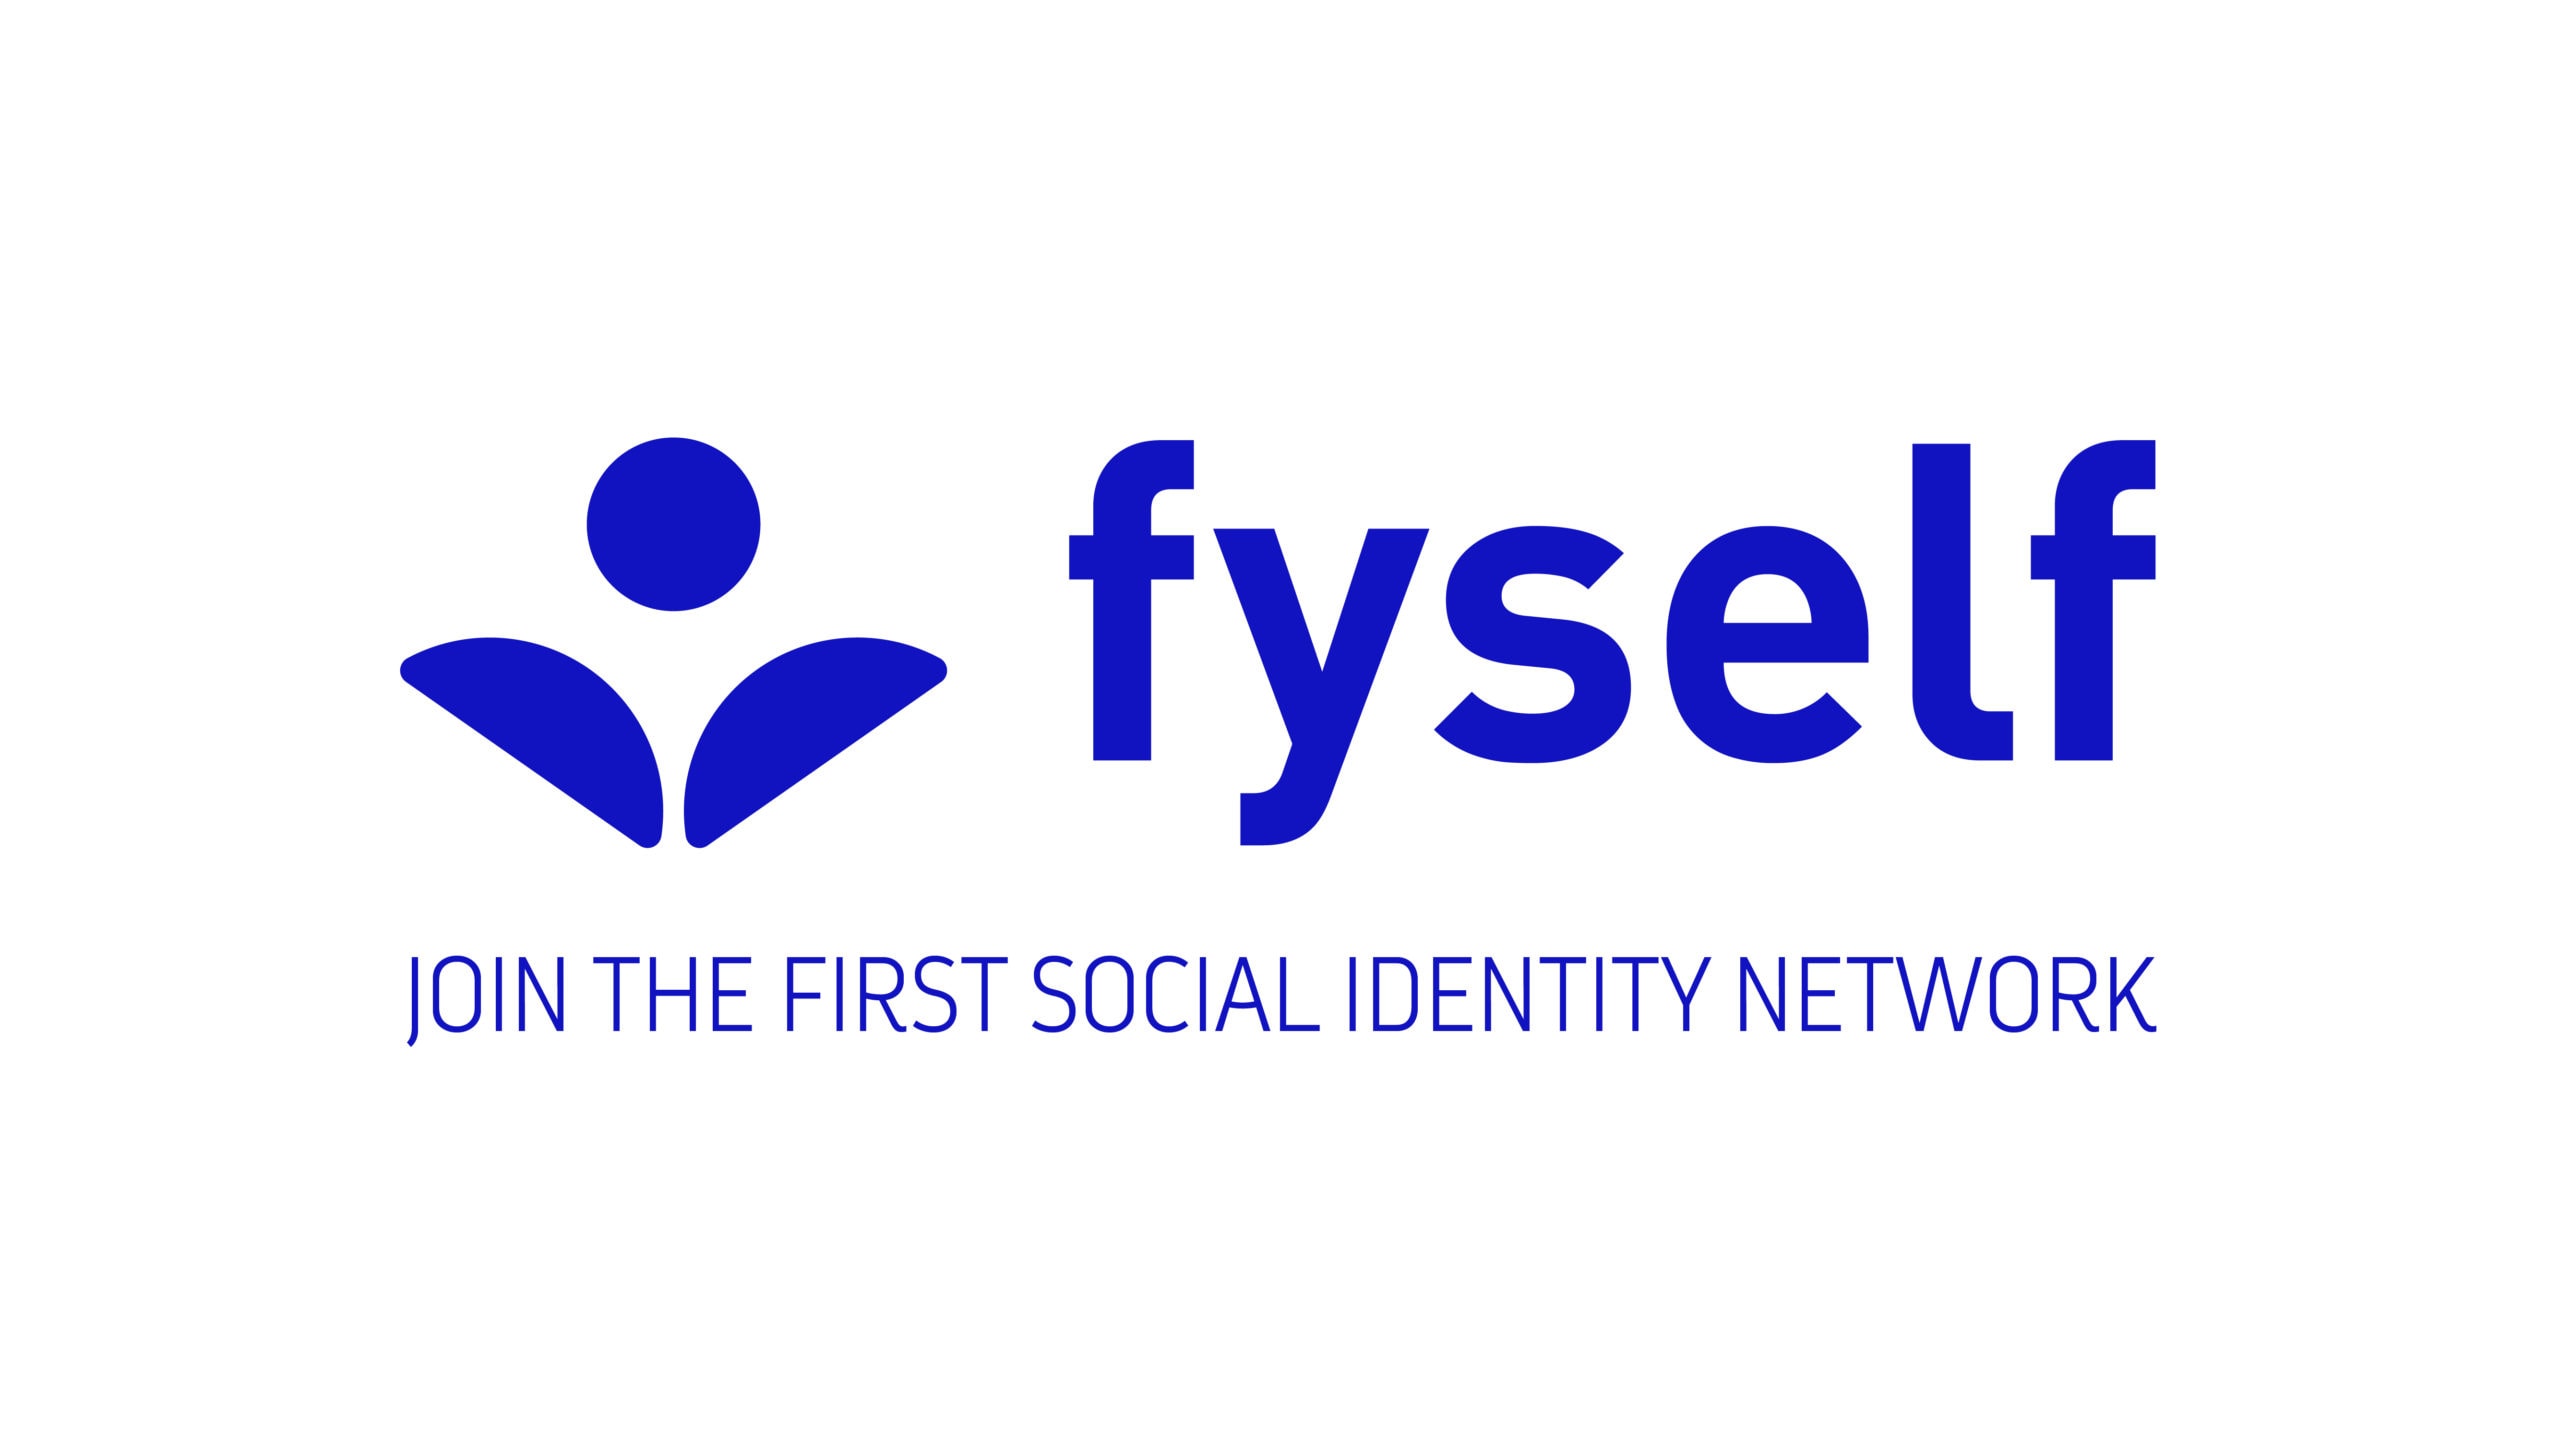 Una red de identidad social es una herramienta de nuevo tipo para los usuarios